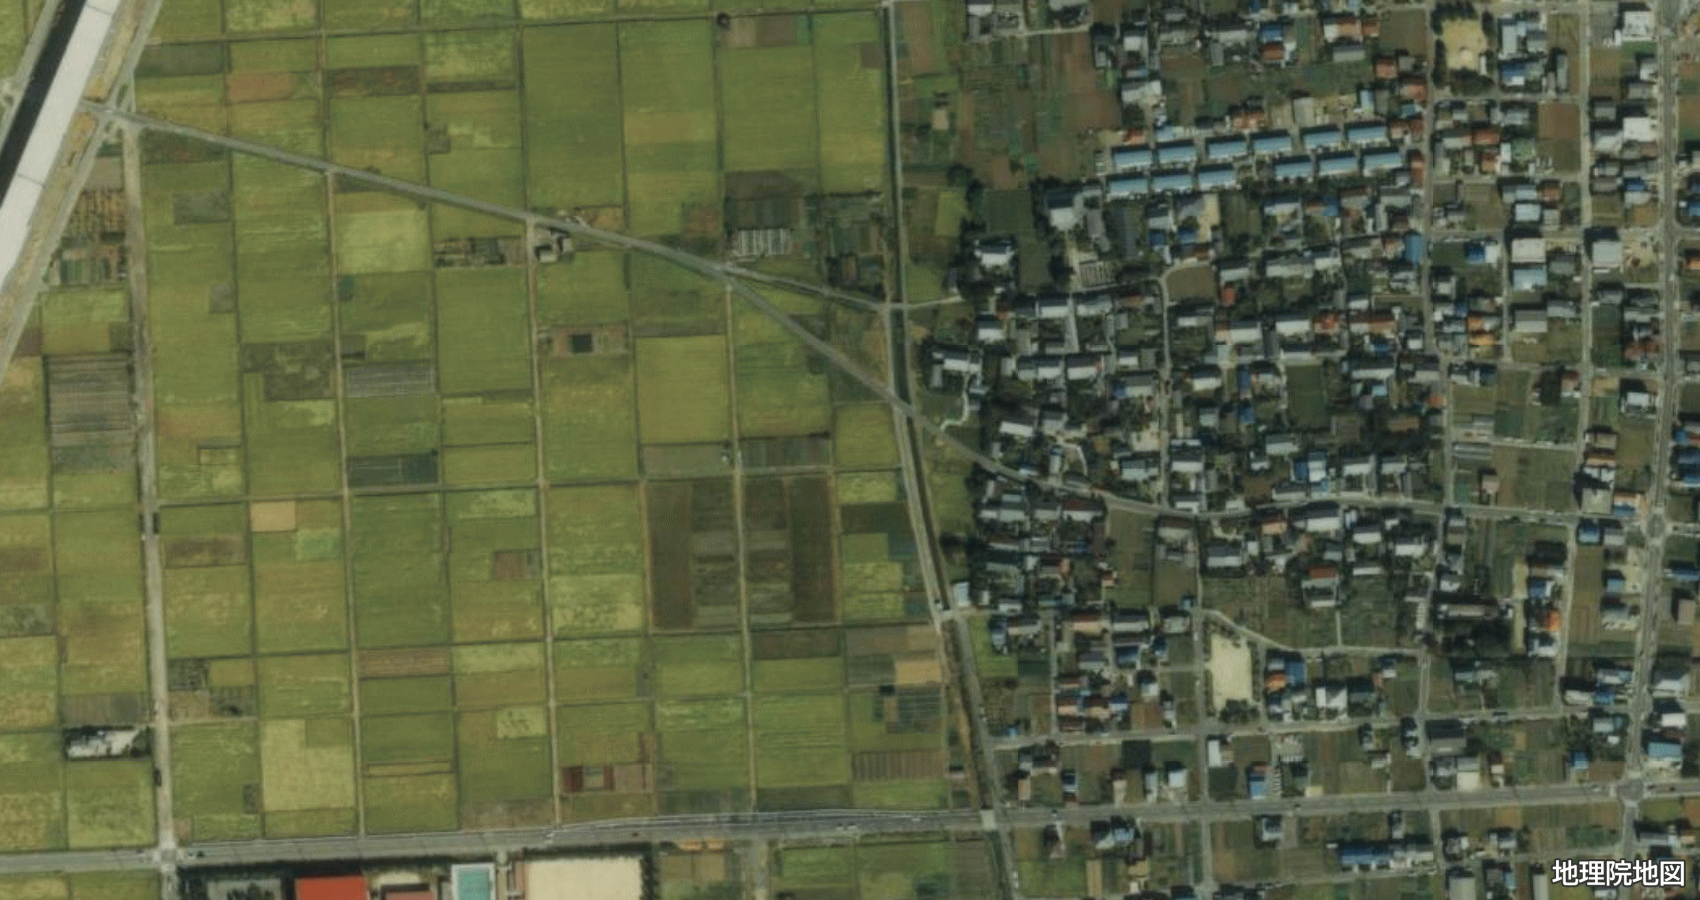 清須市上条 衛星地図 1987〜1990